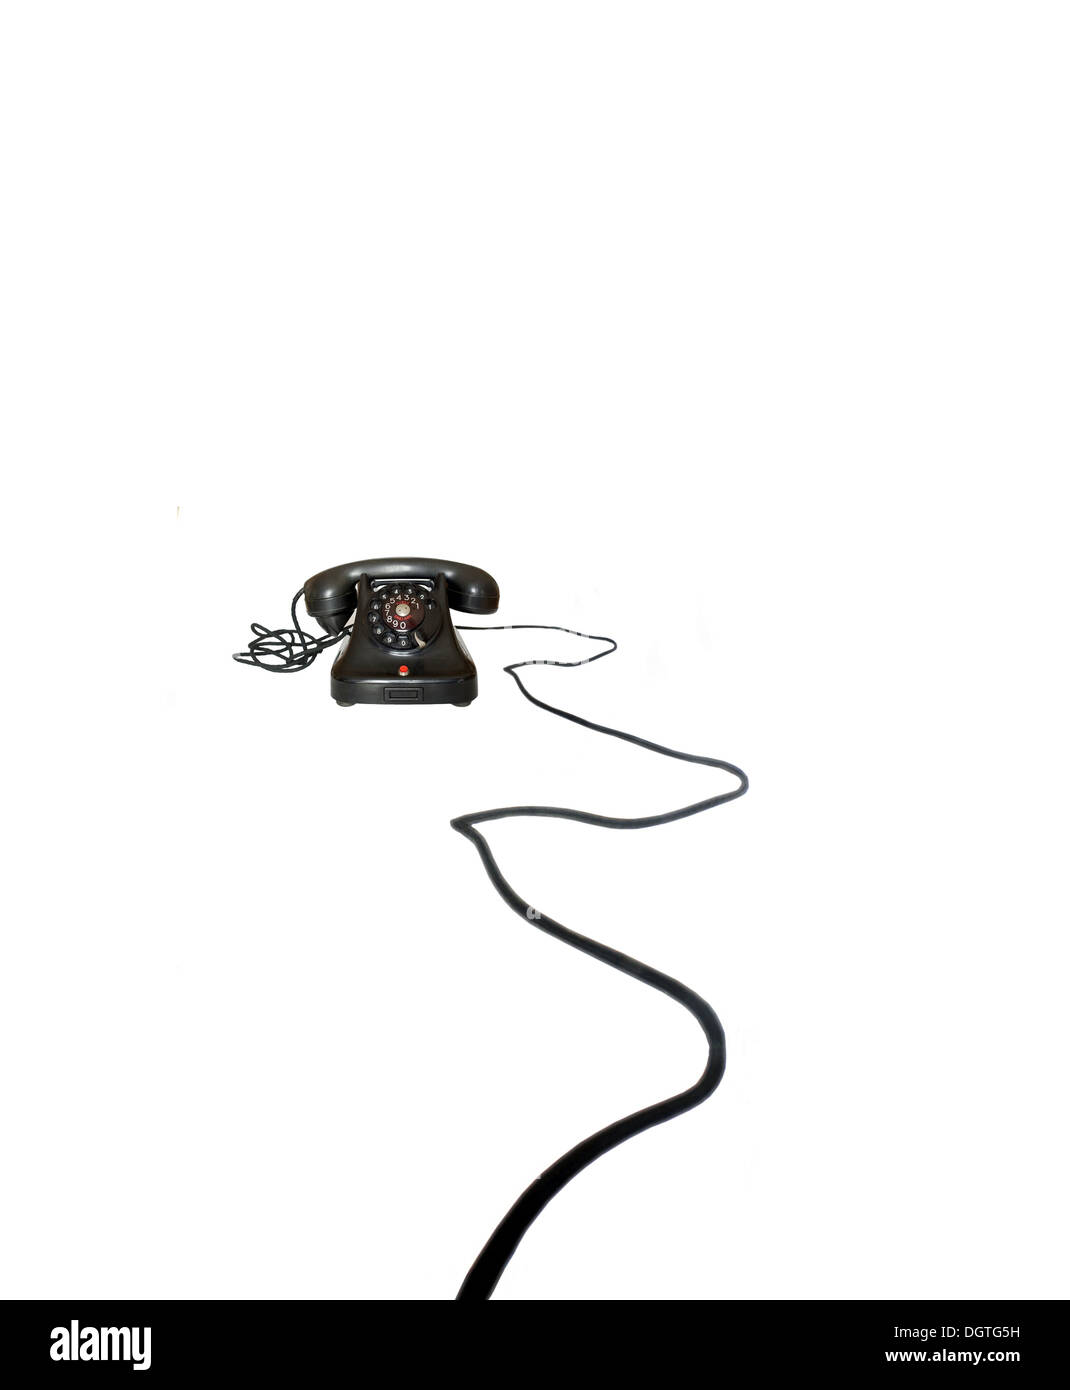 old telephone on white background Stock Photo